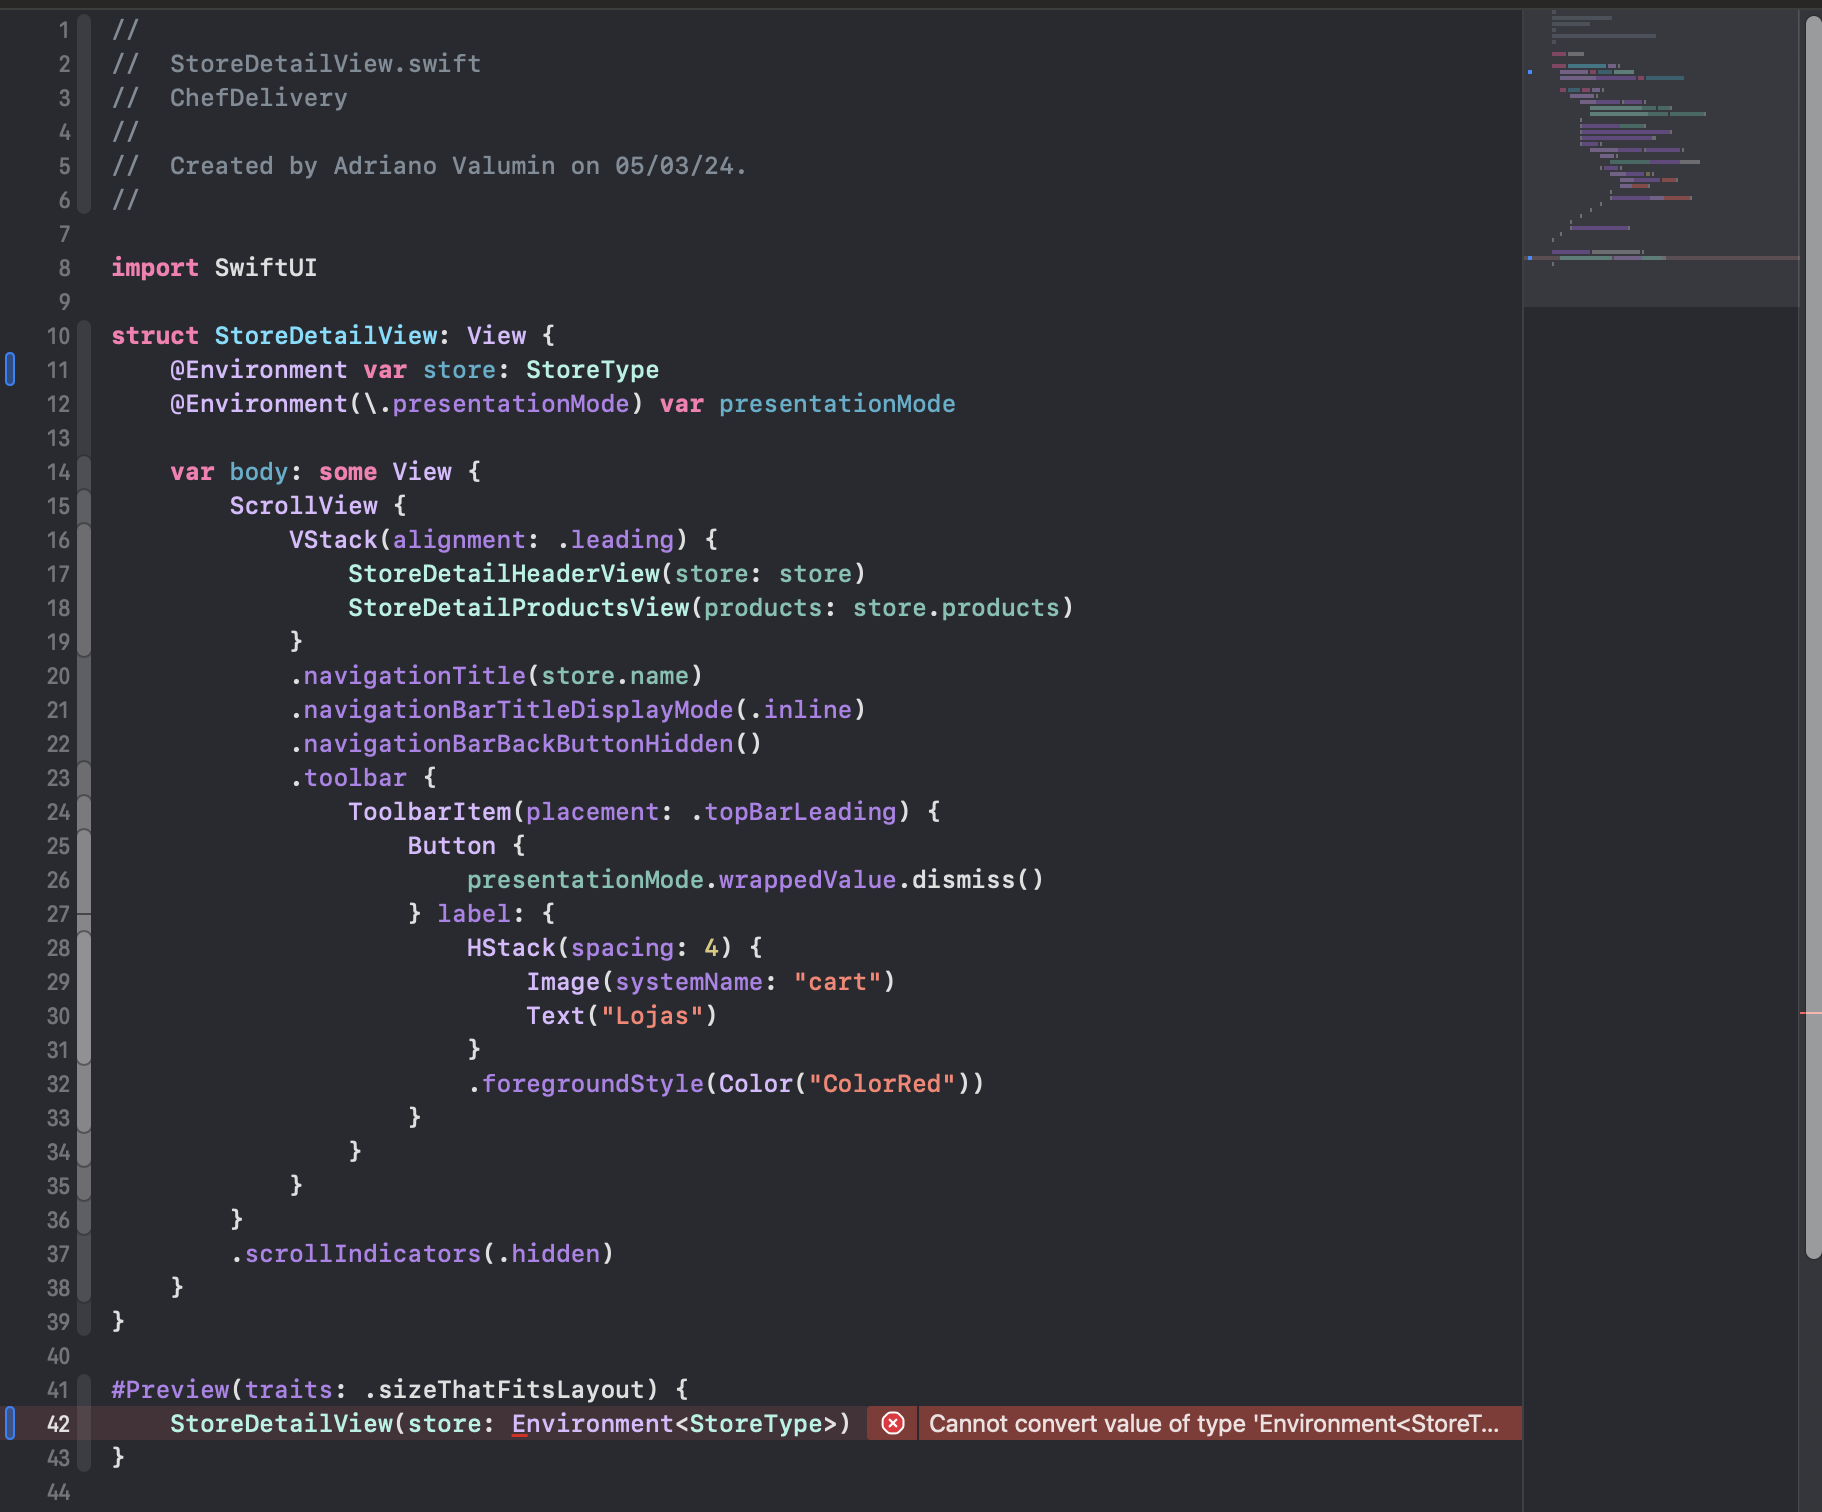 Imagem do Xcode mostrando código do arquivo StoreDetailView.swift após a finalização do curso